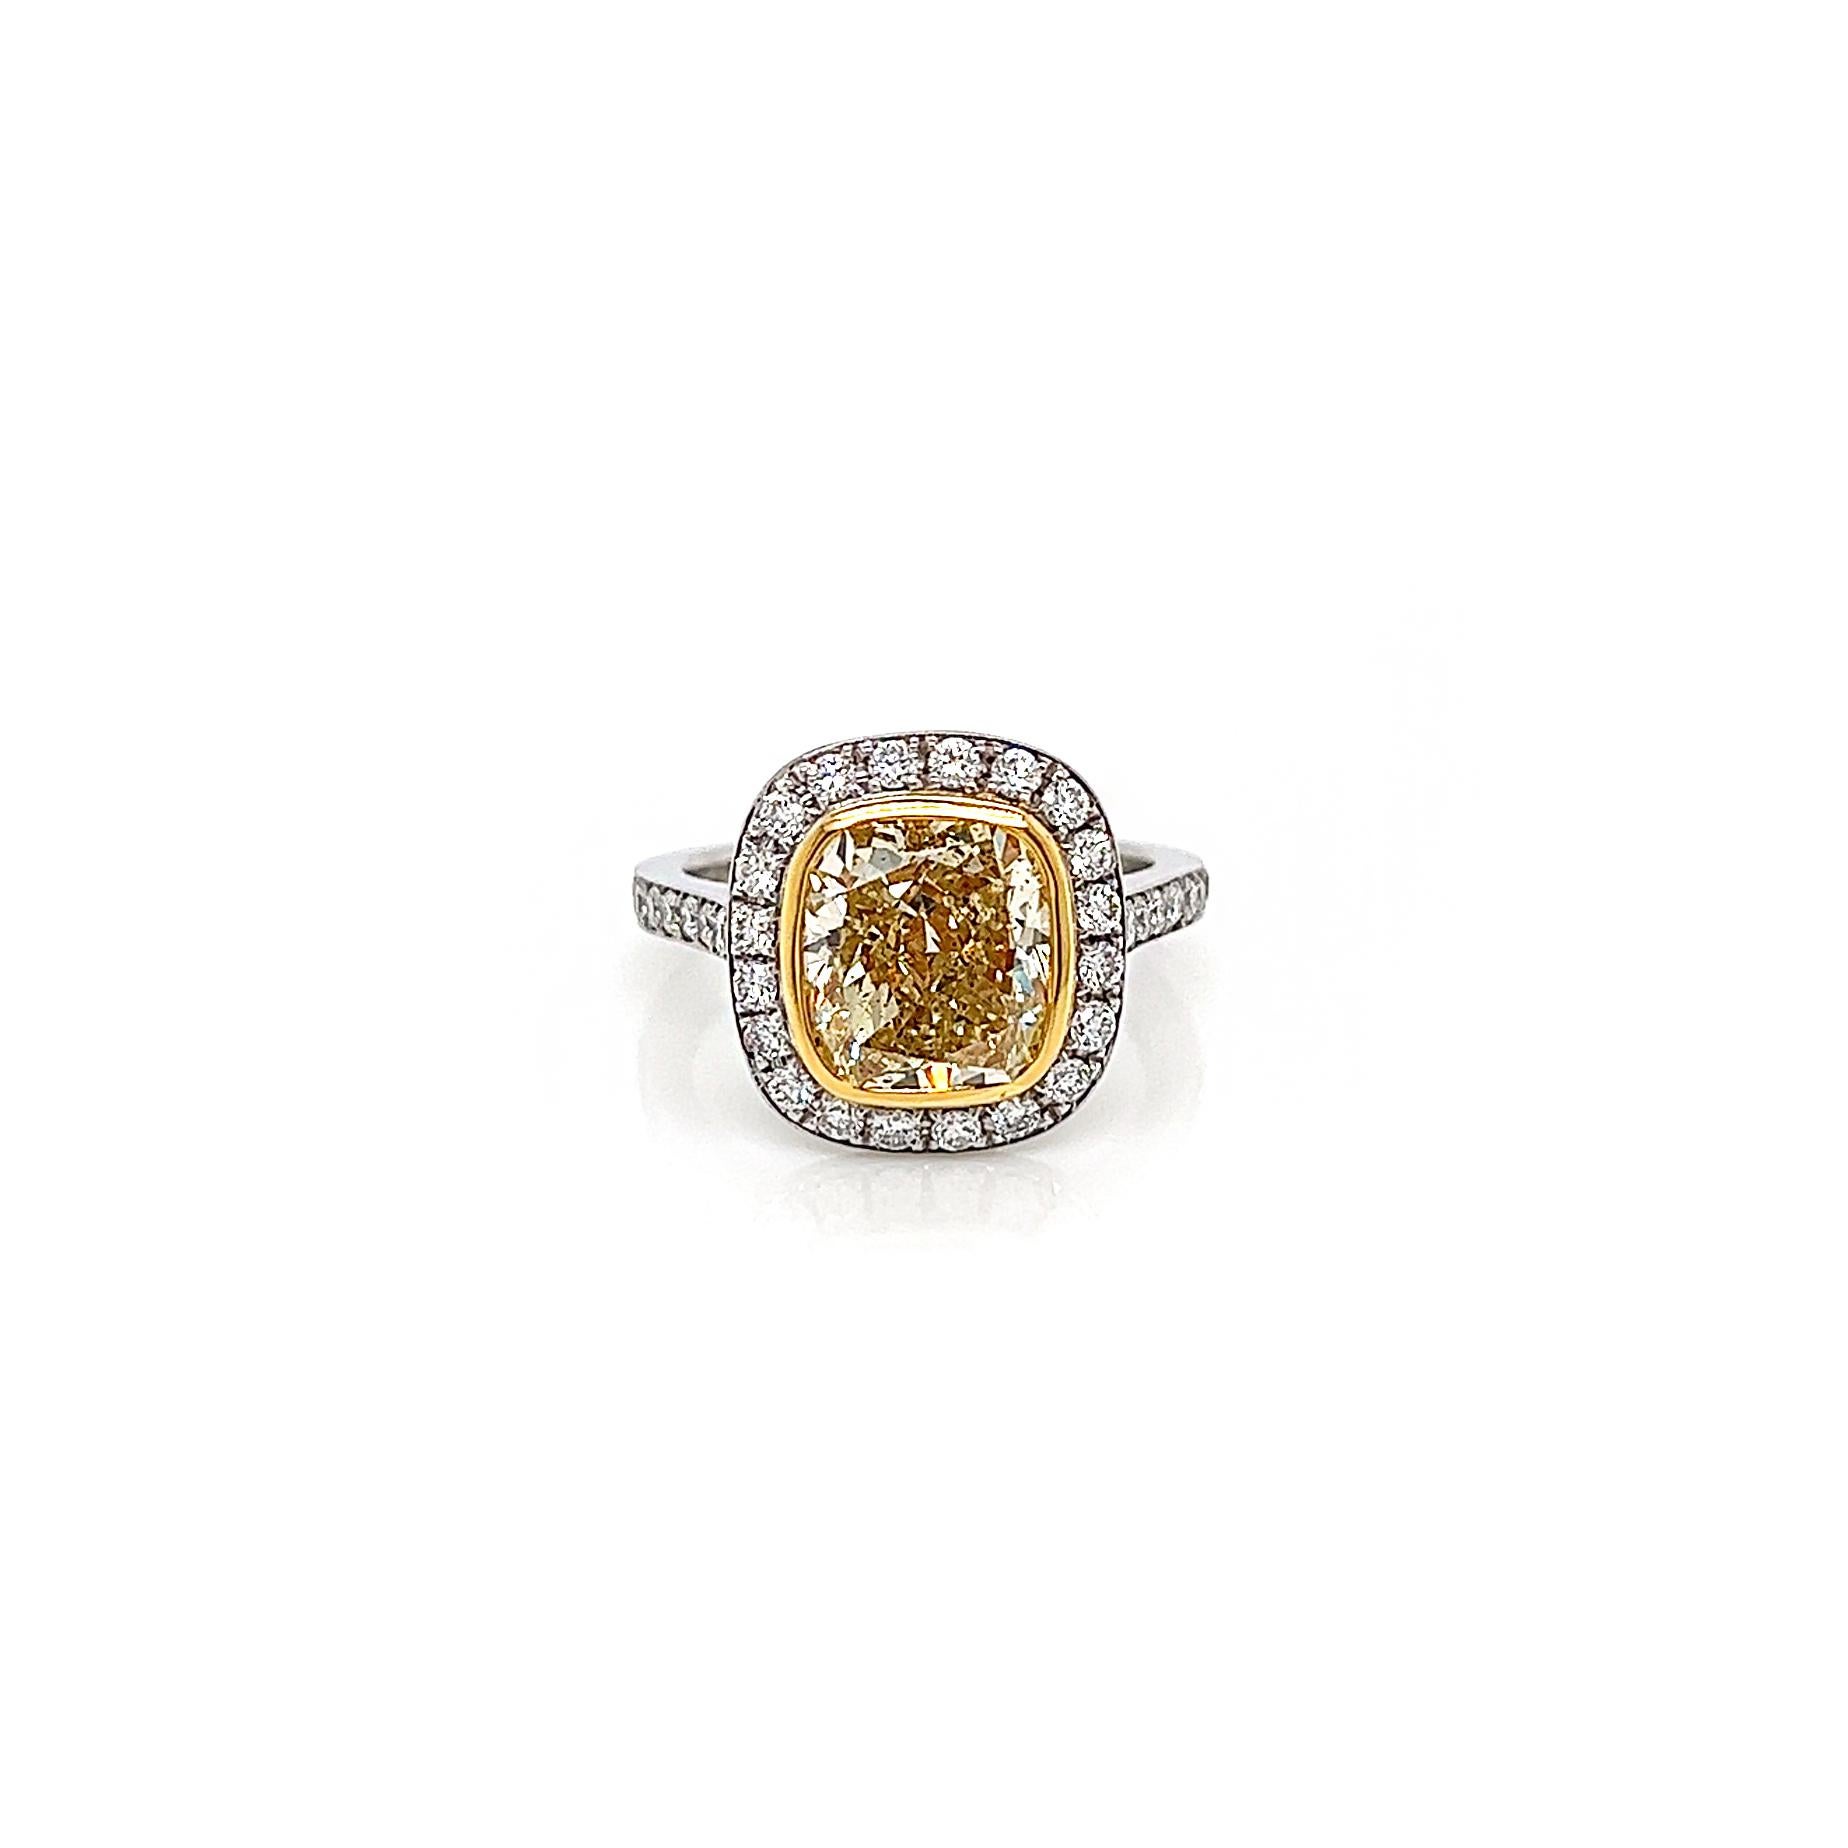 4.31 Gesamtkarat Fancy Yellow Diamond Ladies Halo Pave-Set Verlobungsring. GIA-zertifiziert.

Es gibt nichts Schöneres, als sich an der Schönheit farbiger Diamanten in fein gearbeiteten Schmuckstücken zu erfreuen, außer vielleicht an einem